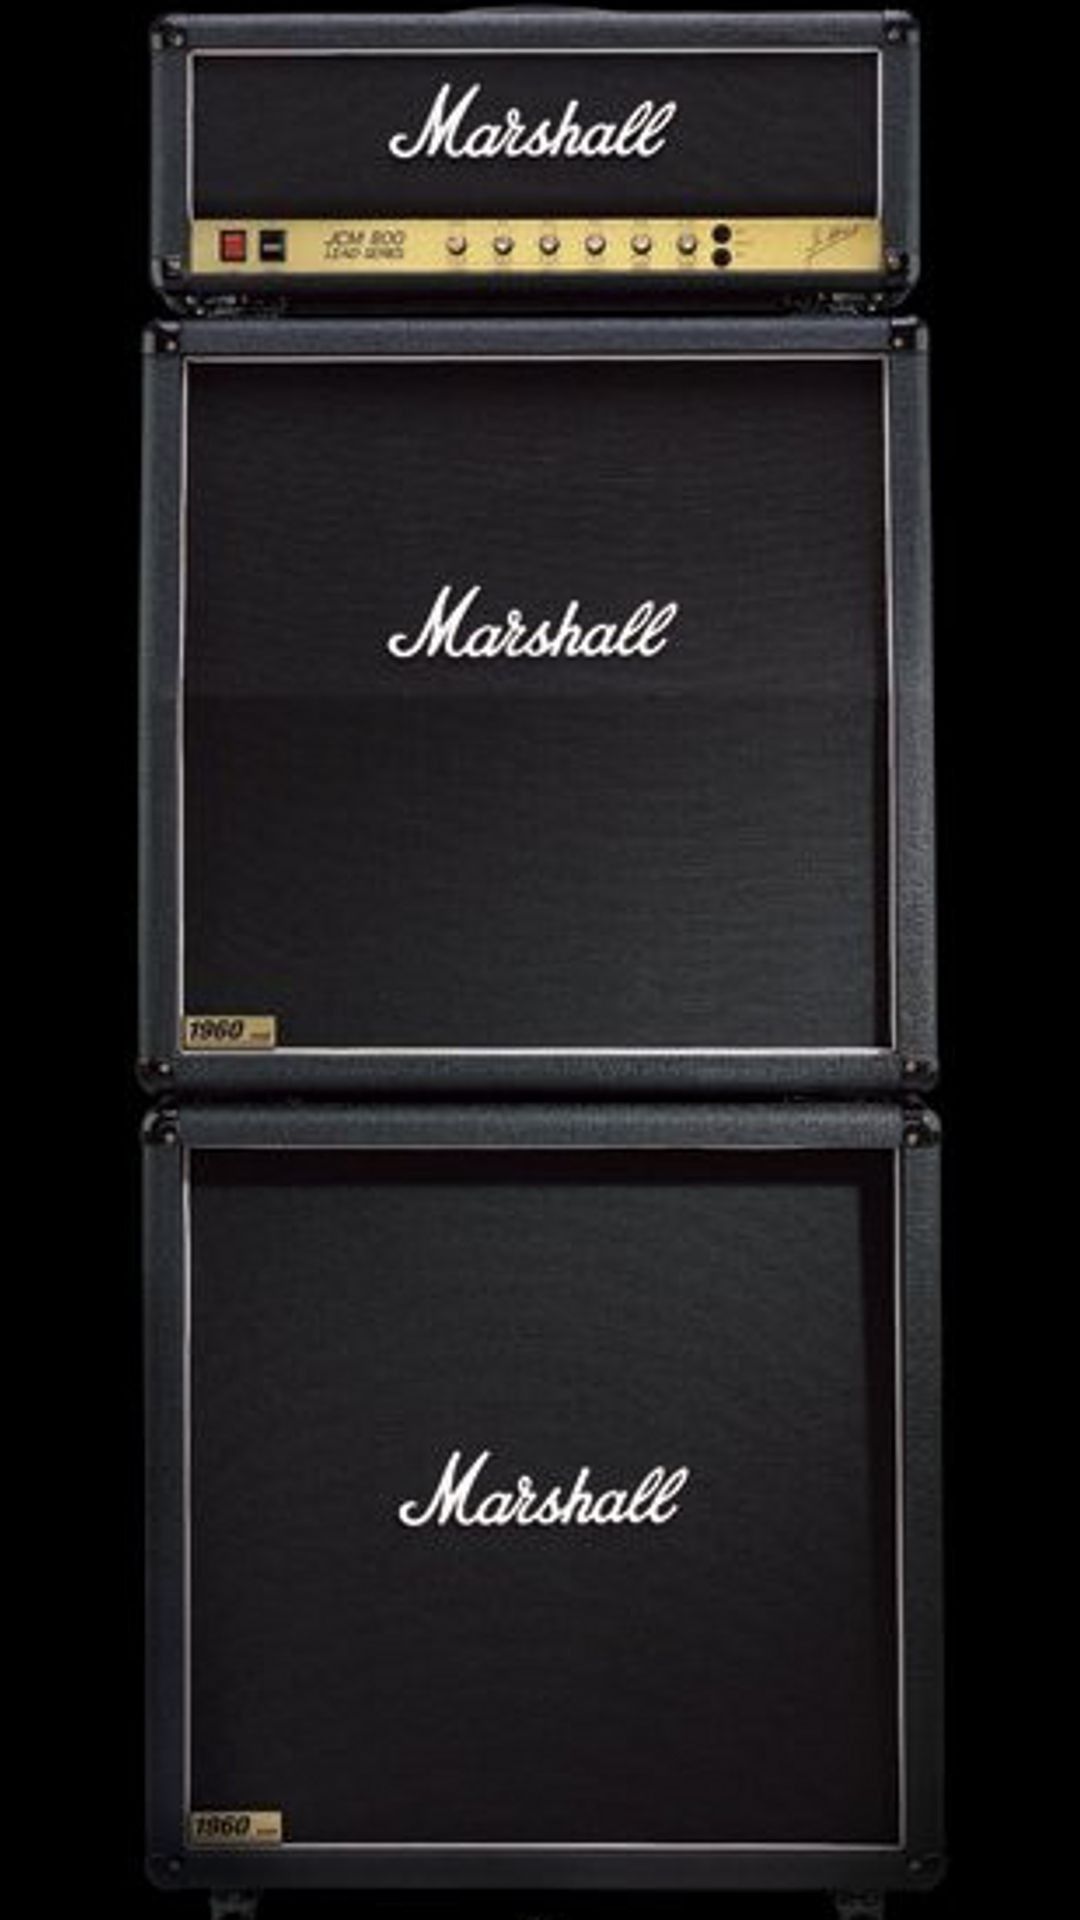 New Marshall Amp Wallpaper for Walls Marshall amps Marshall 1080x1920